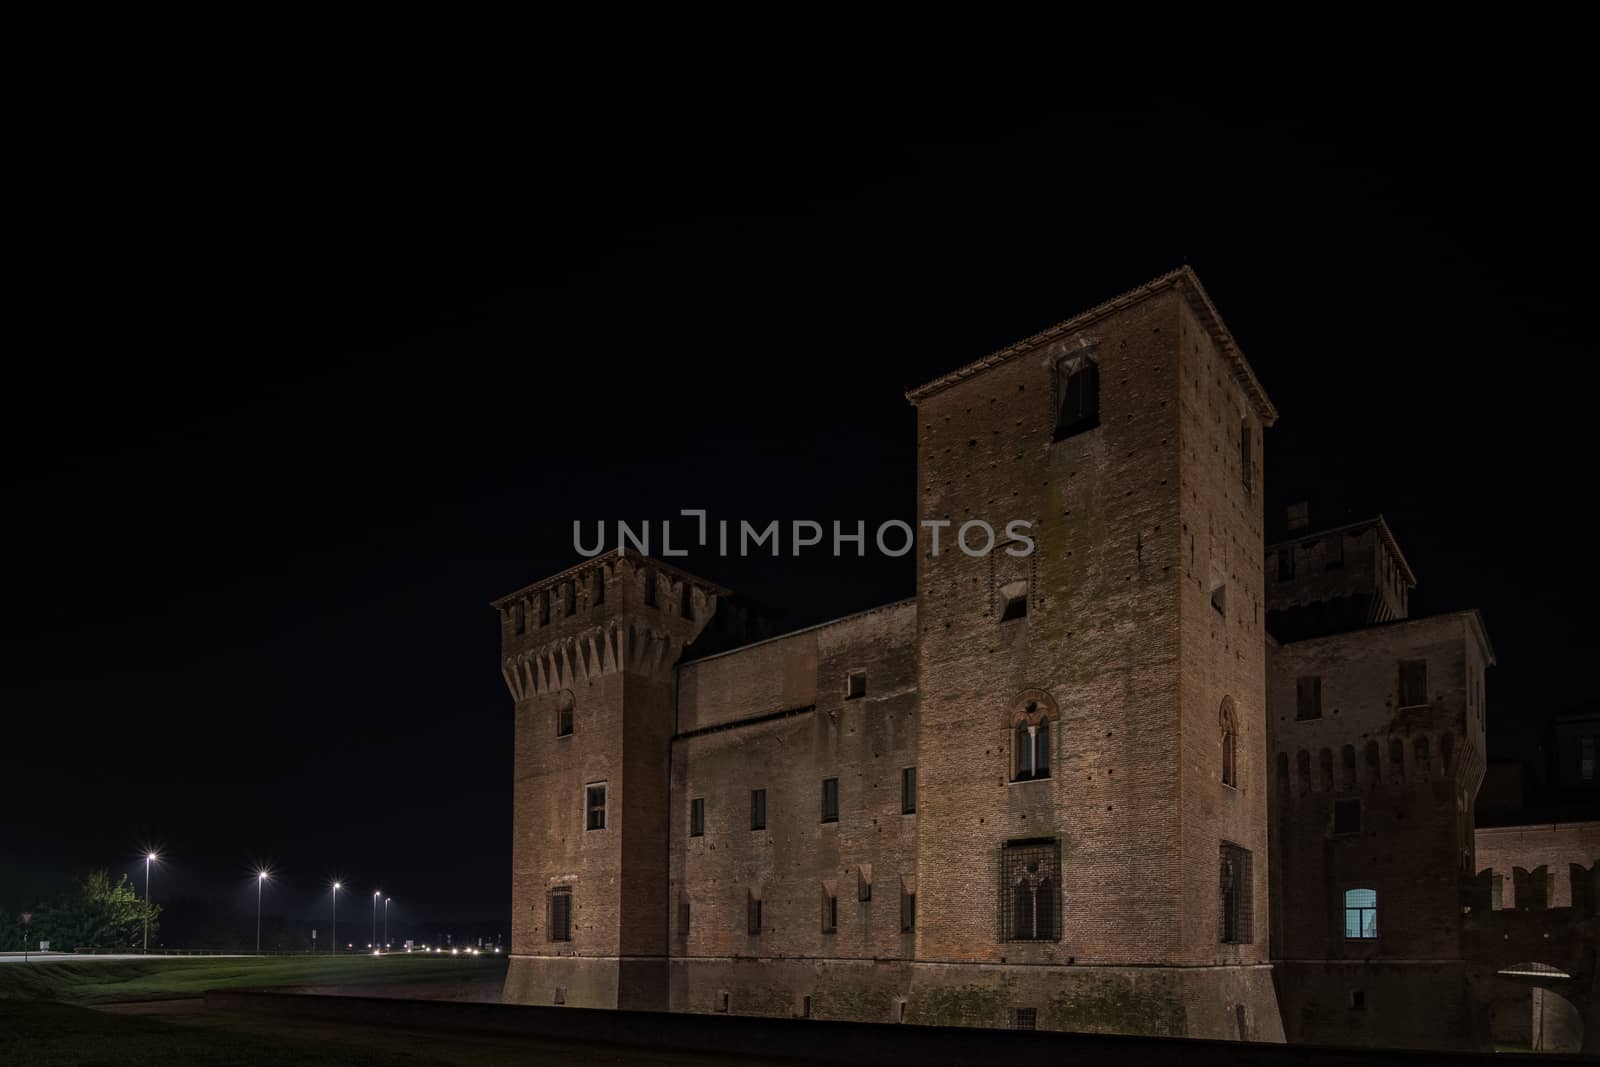 The Castle of San Giorgio di Mantova seen at night, a night landscape of a historic Italian city